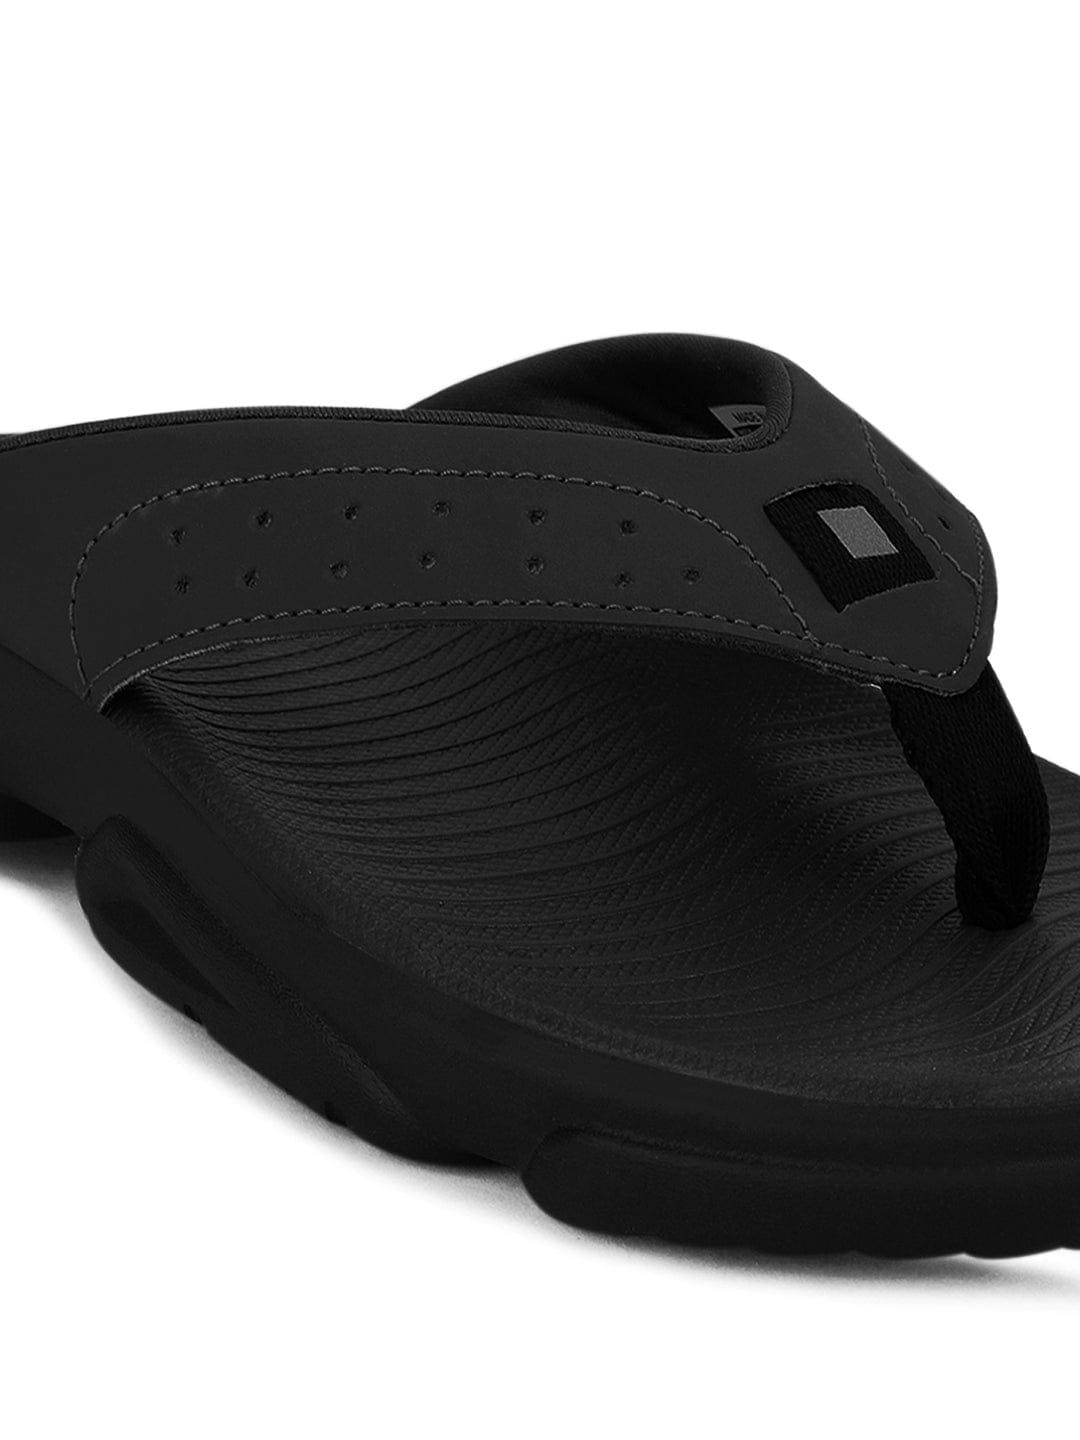 Buy SL-405A Black Men's Flip Flops online | Campus Shoes